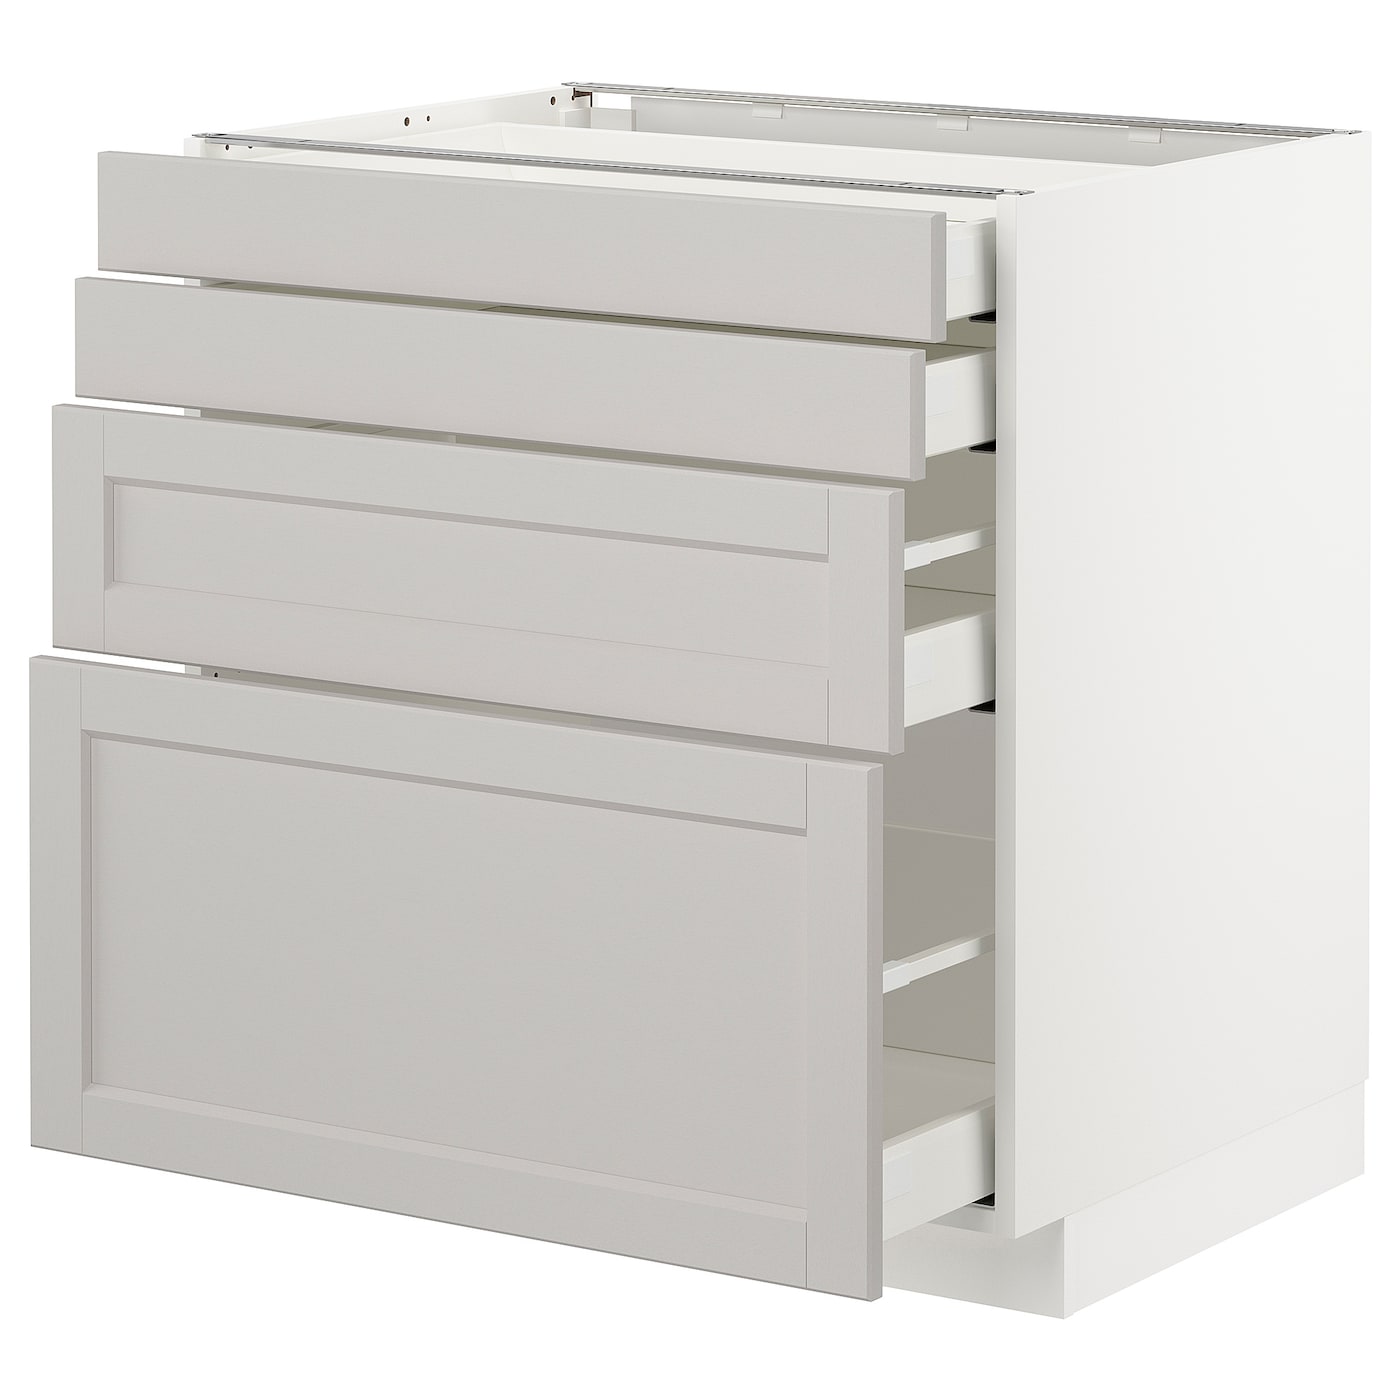 Напольный кухонный шкаф  - IKEA METOD MAXIMERA, 88x62x80см, белый/темно-бежевый, МЕТОД МАКСИМЕРА ИКЕА